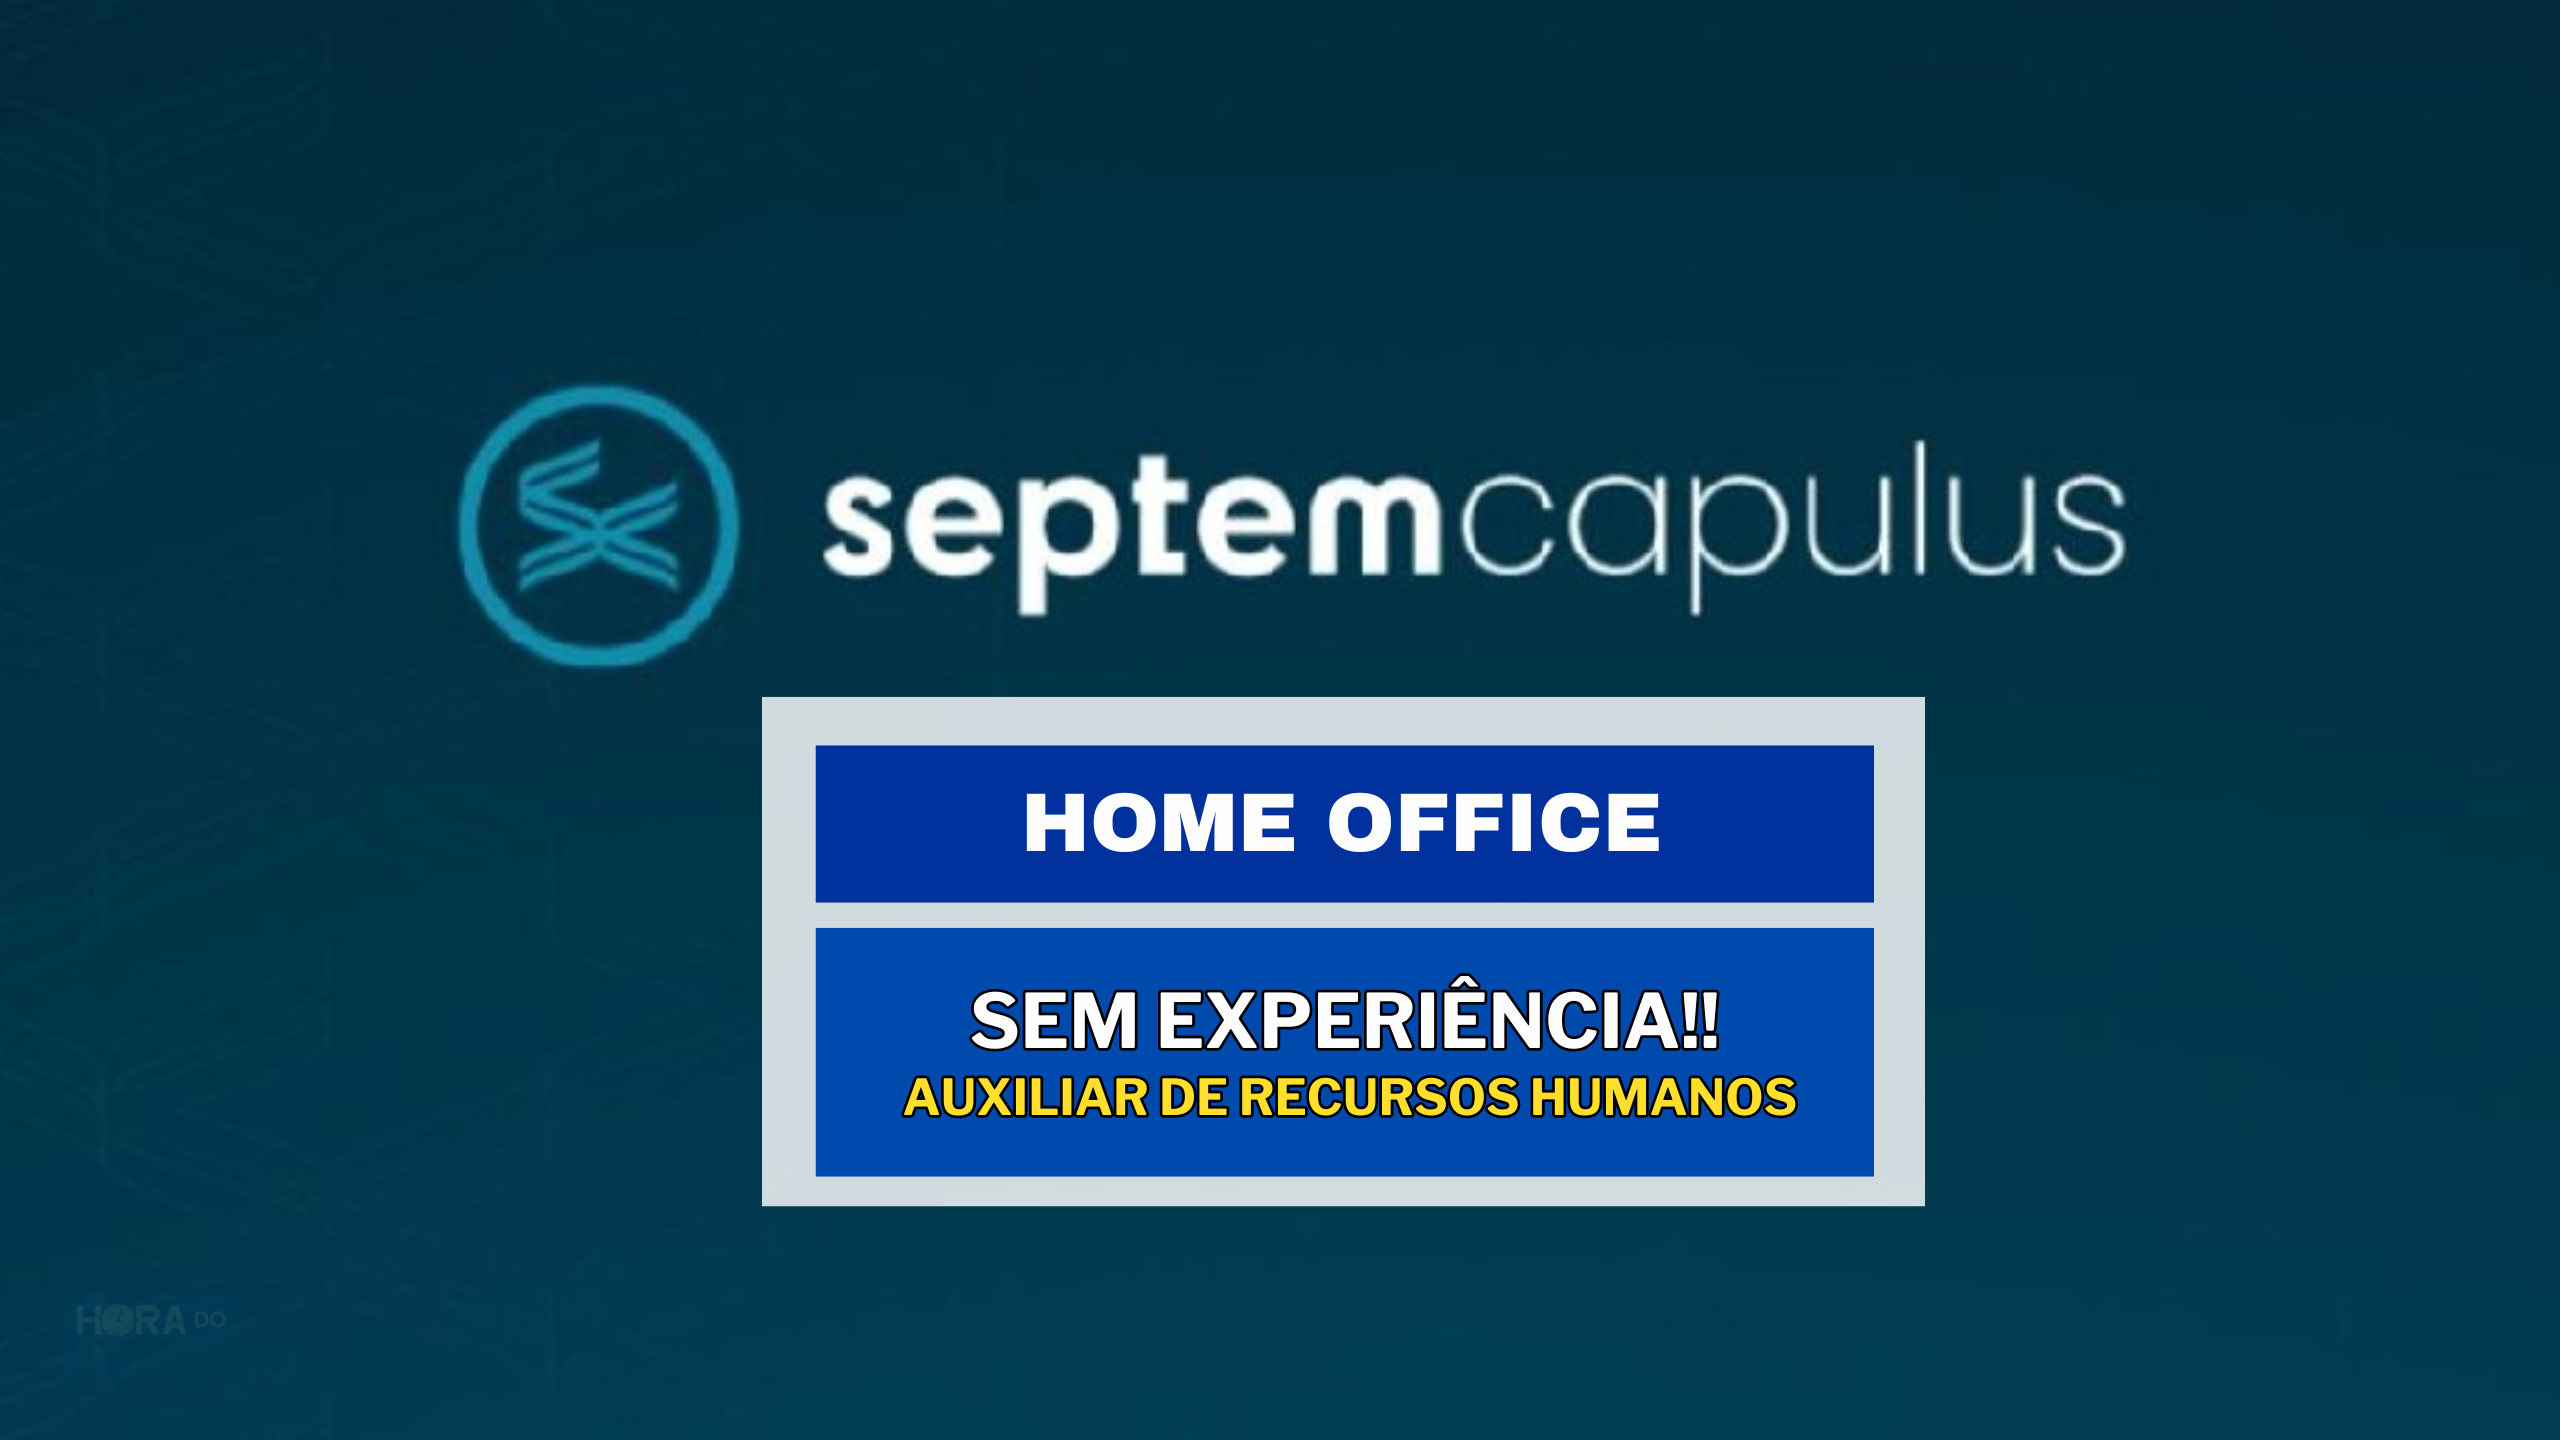 SEM EXPERIÊNCIA! Auxiliar de Recursos Humanos 100% HOME OFFICE na Septem Capulus